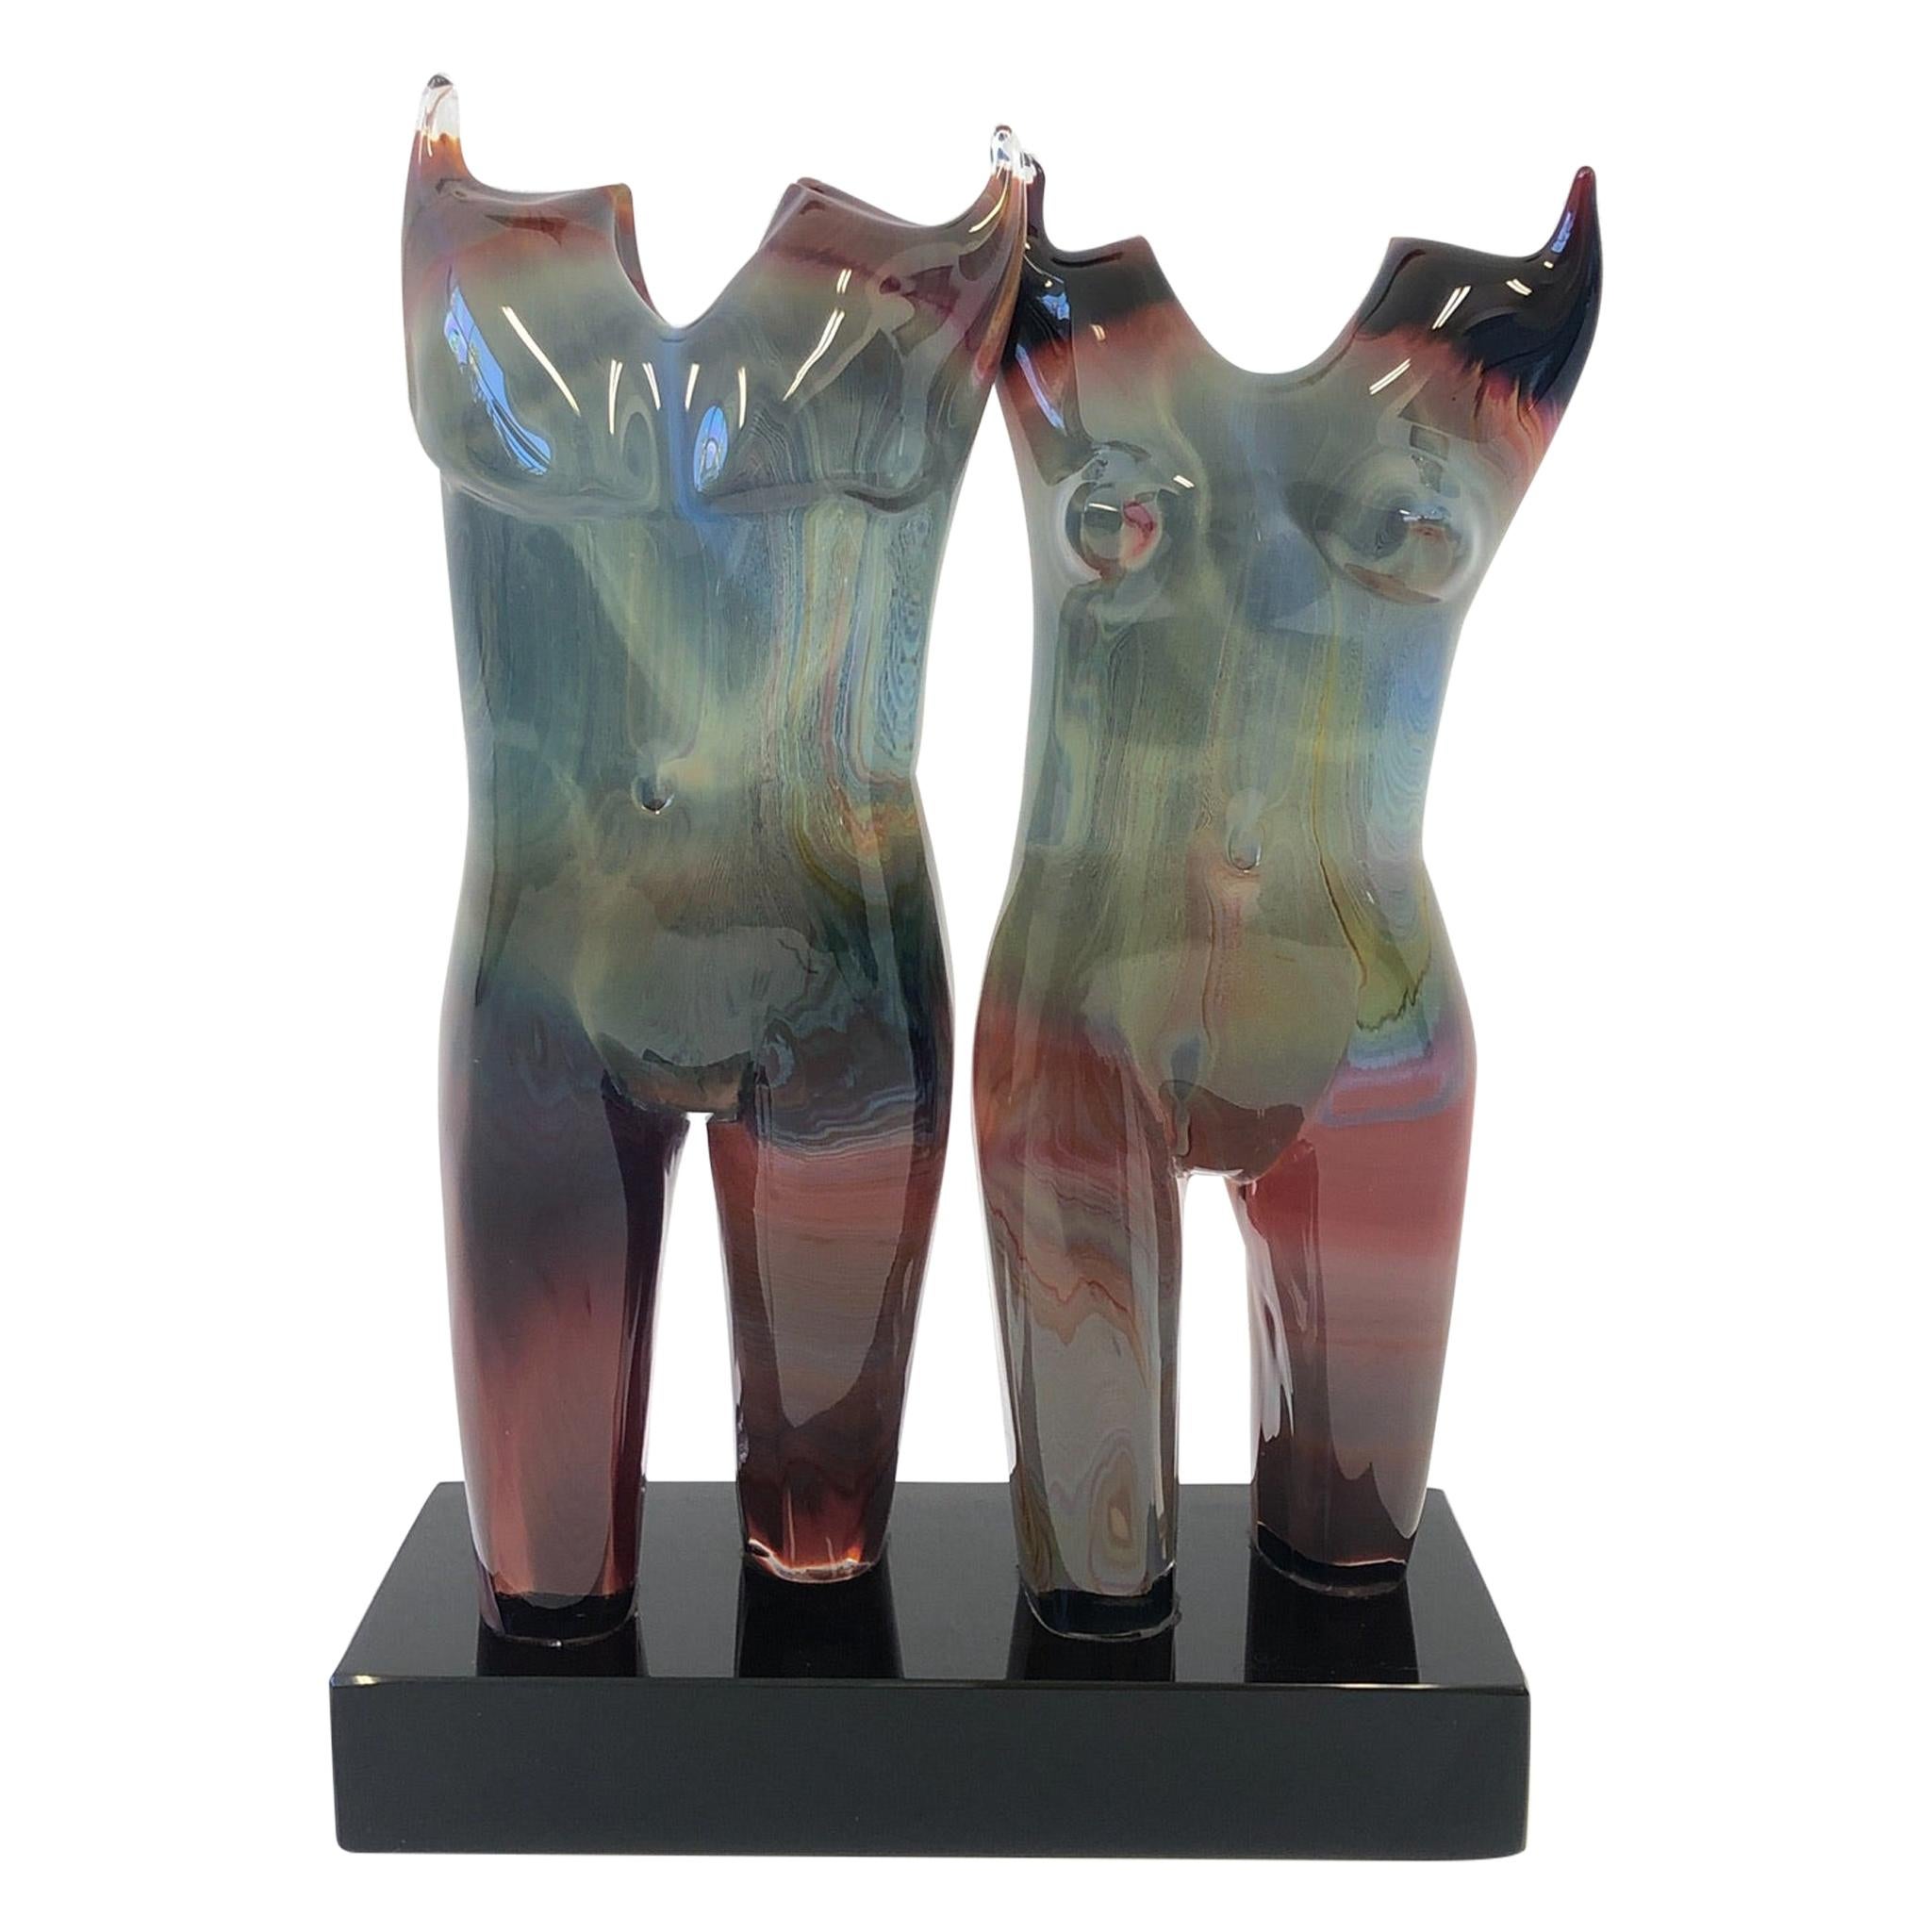 Italian Studio Murano Glass Female and Male Sculpture by Dino Rosin